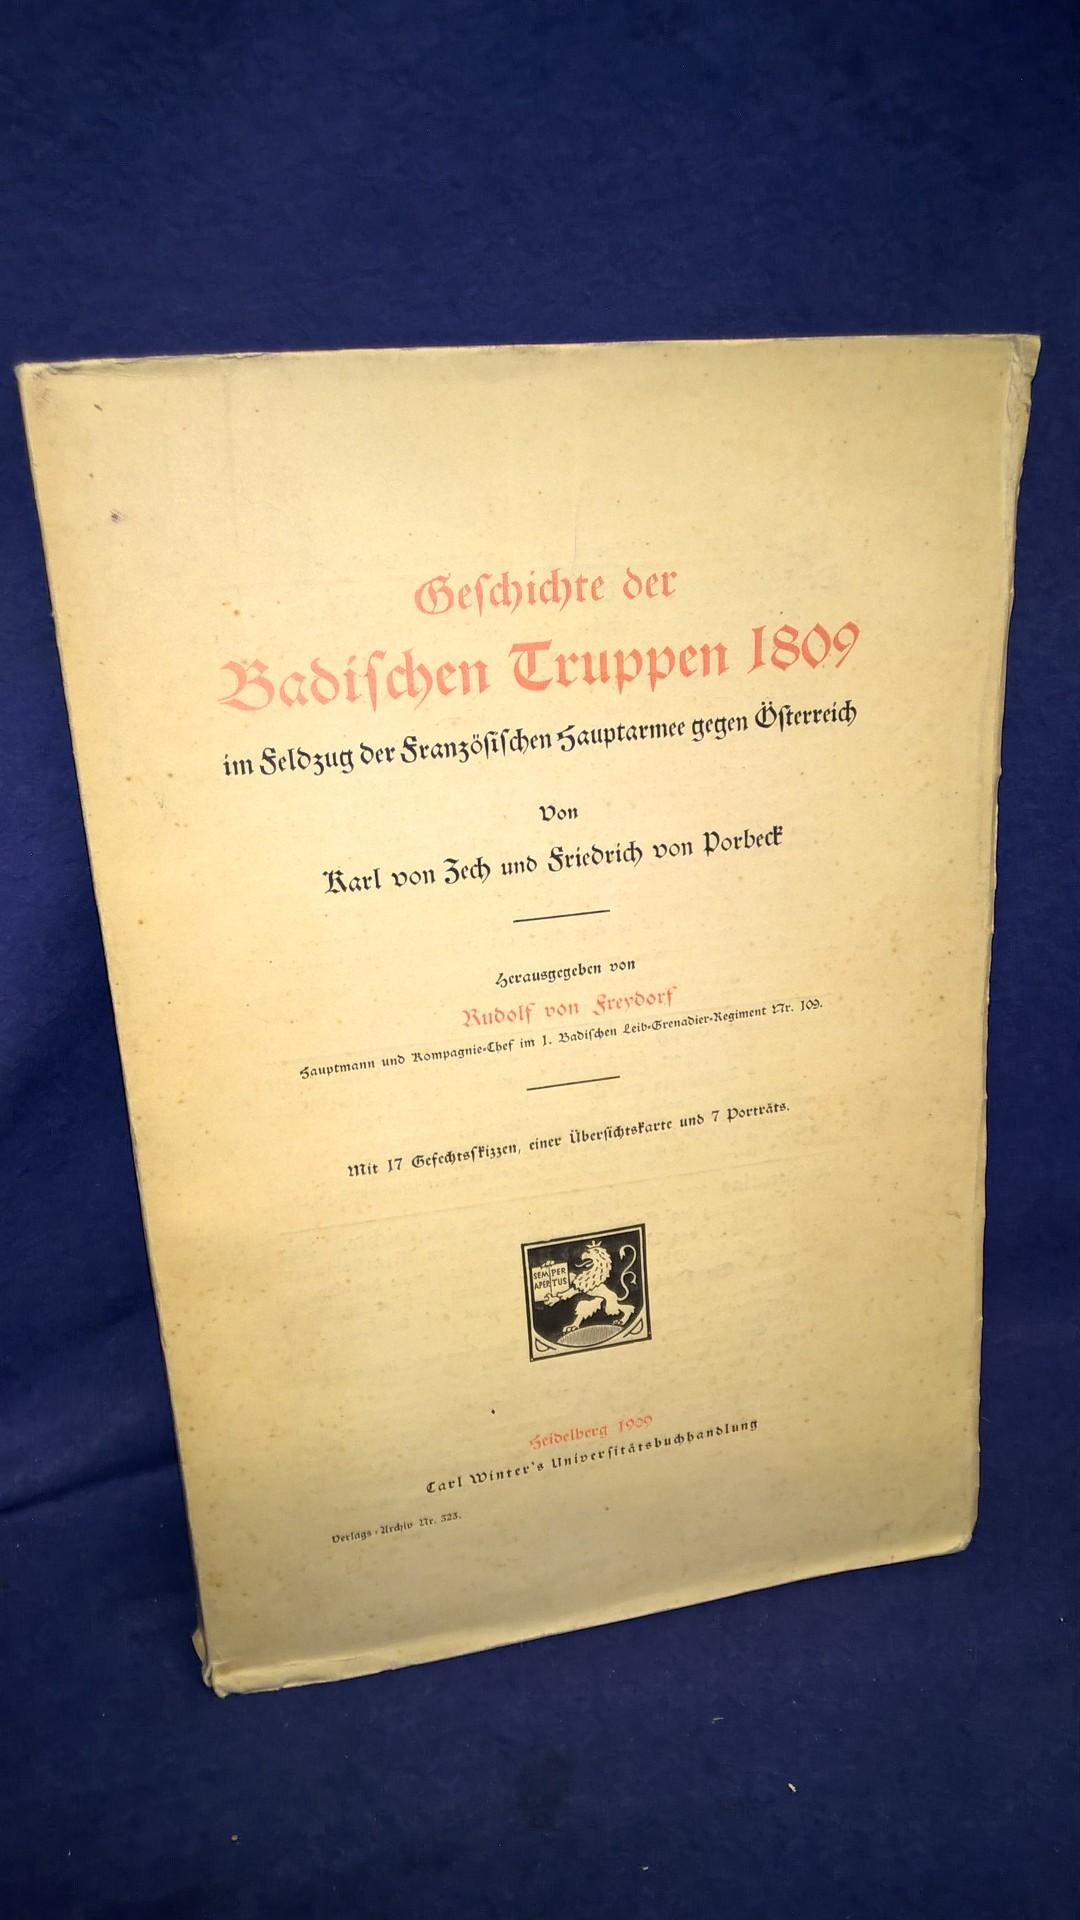 Geschichte der Badischen Truppen 1809. Im Feldzug der französischen Hauptarmee gegen Österreich. 